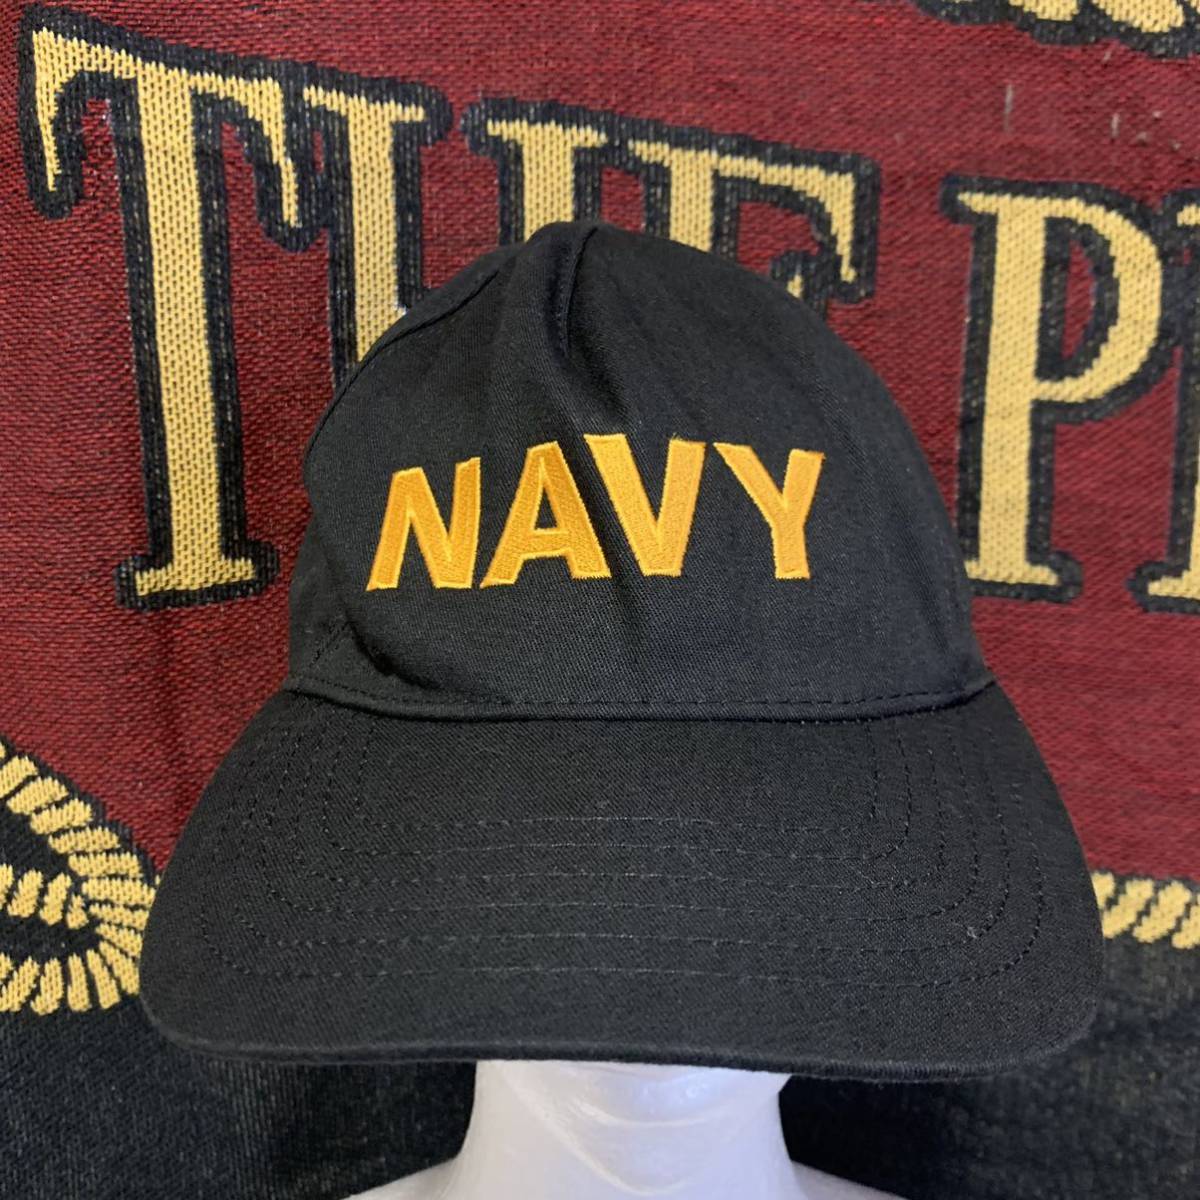 沖縄 米軍放出品 NAVY MADE IN USA 帽子 キャップ アウトドア オシャレ ファッション 調節可能 (管理番号HI12)_画像1